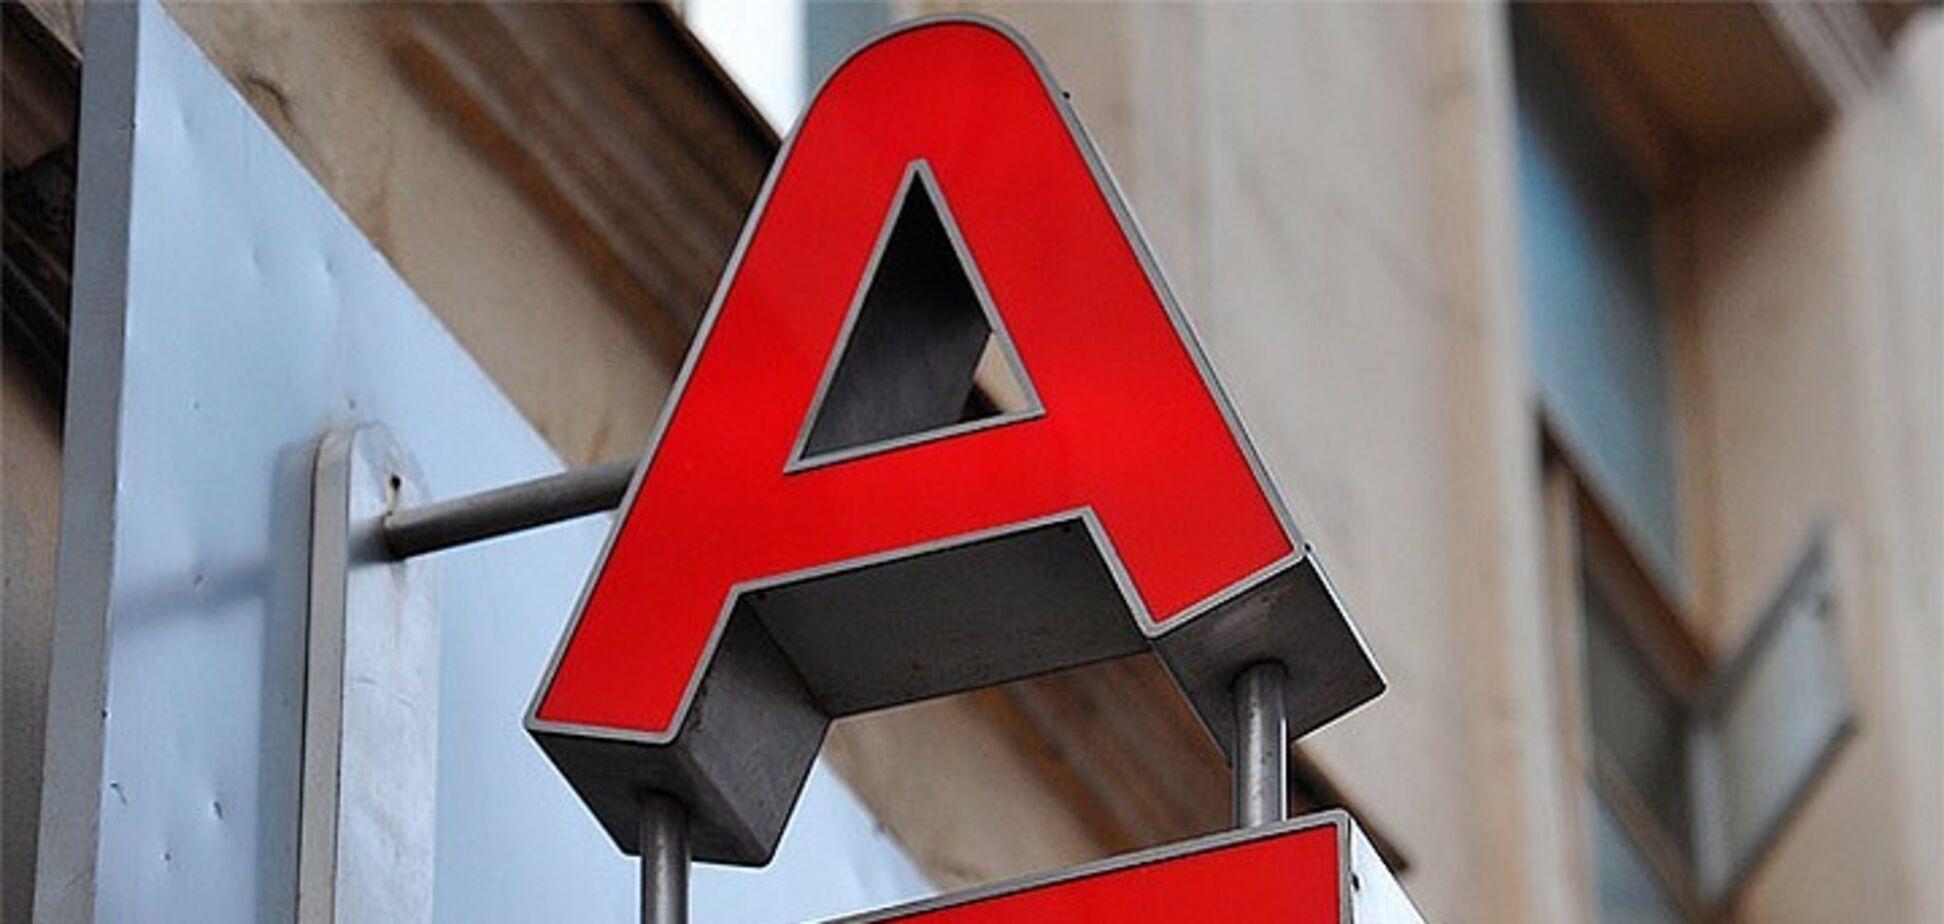 Альфа-Банк Украина обеспечил возможность снятия наличных денег на кассах 'Эпицентра'